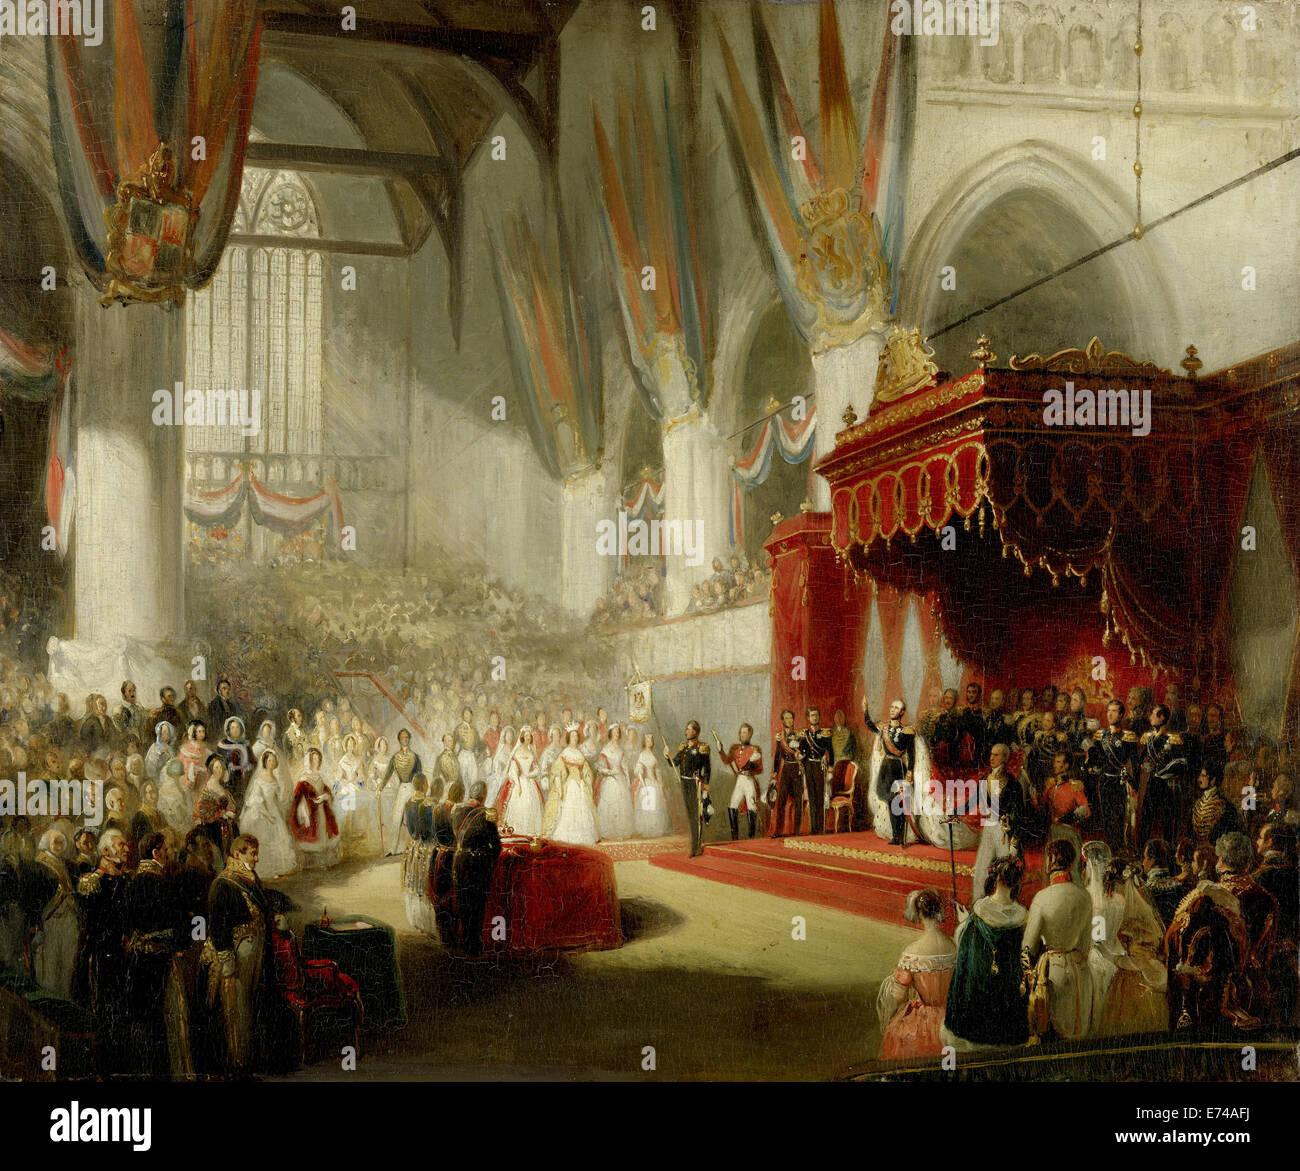 La inauguración del rey Guillermo II en la iglesia Nieuwe Kerk de Amsterdam, 28 de noviembre de 1840 - por Nicholas Pieneman, 1840-1845 Foto de stock